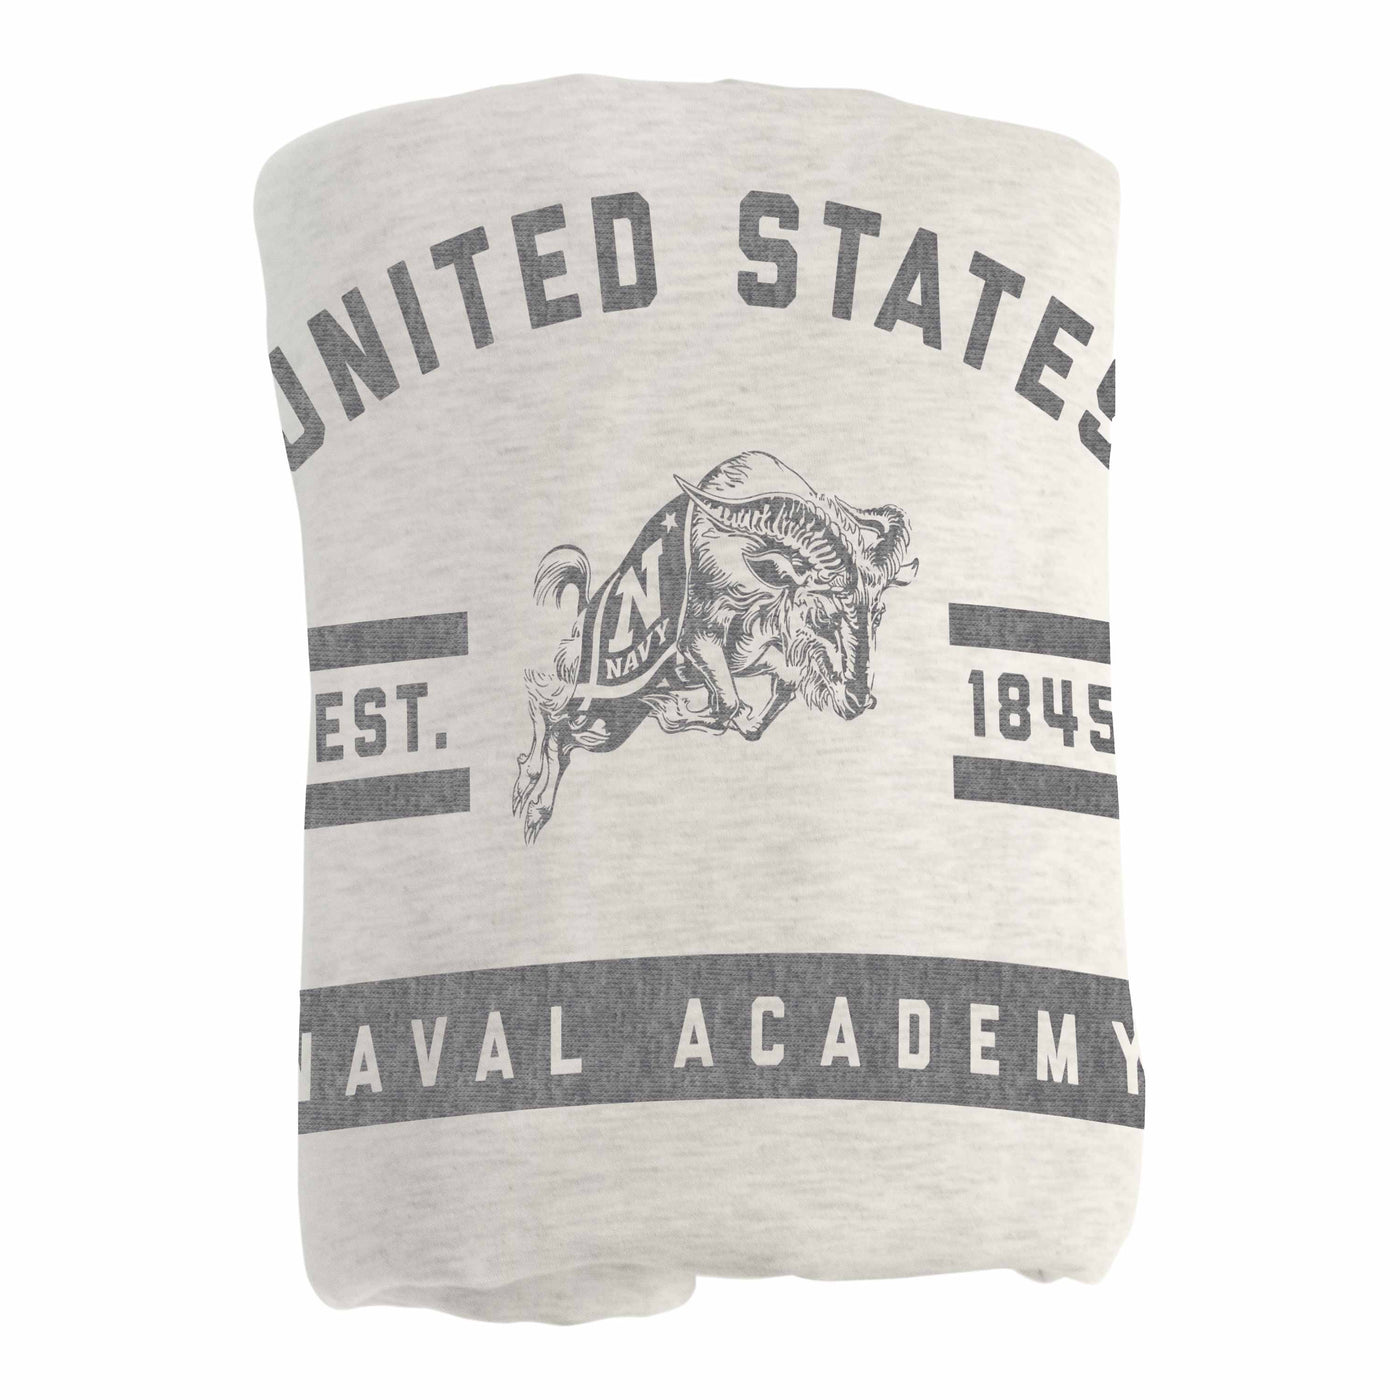 Naval Academy Oatmeal Sweatshirt Blanket